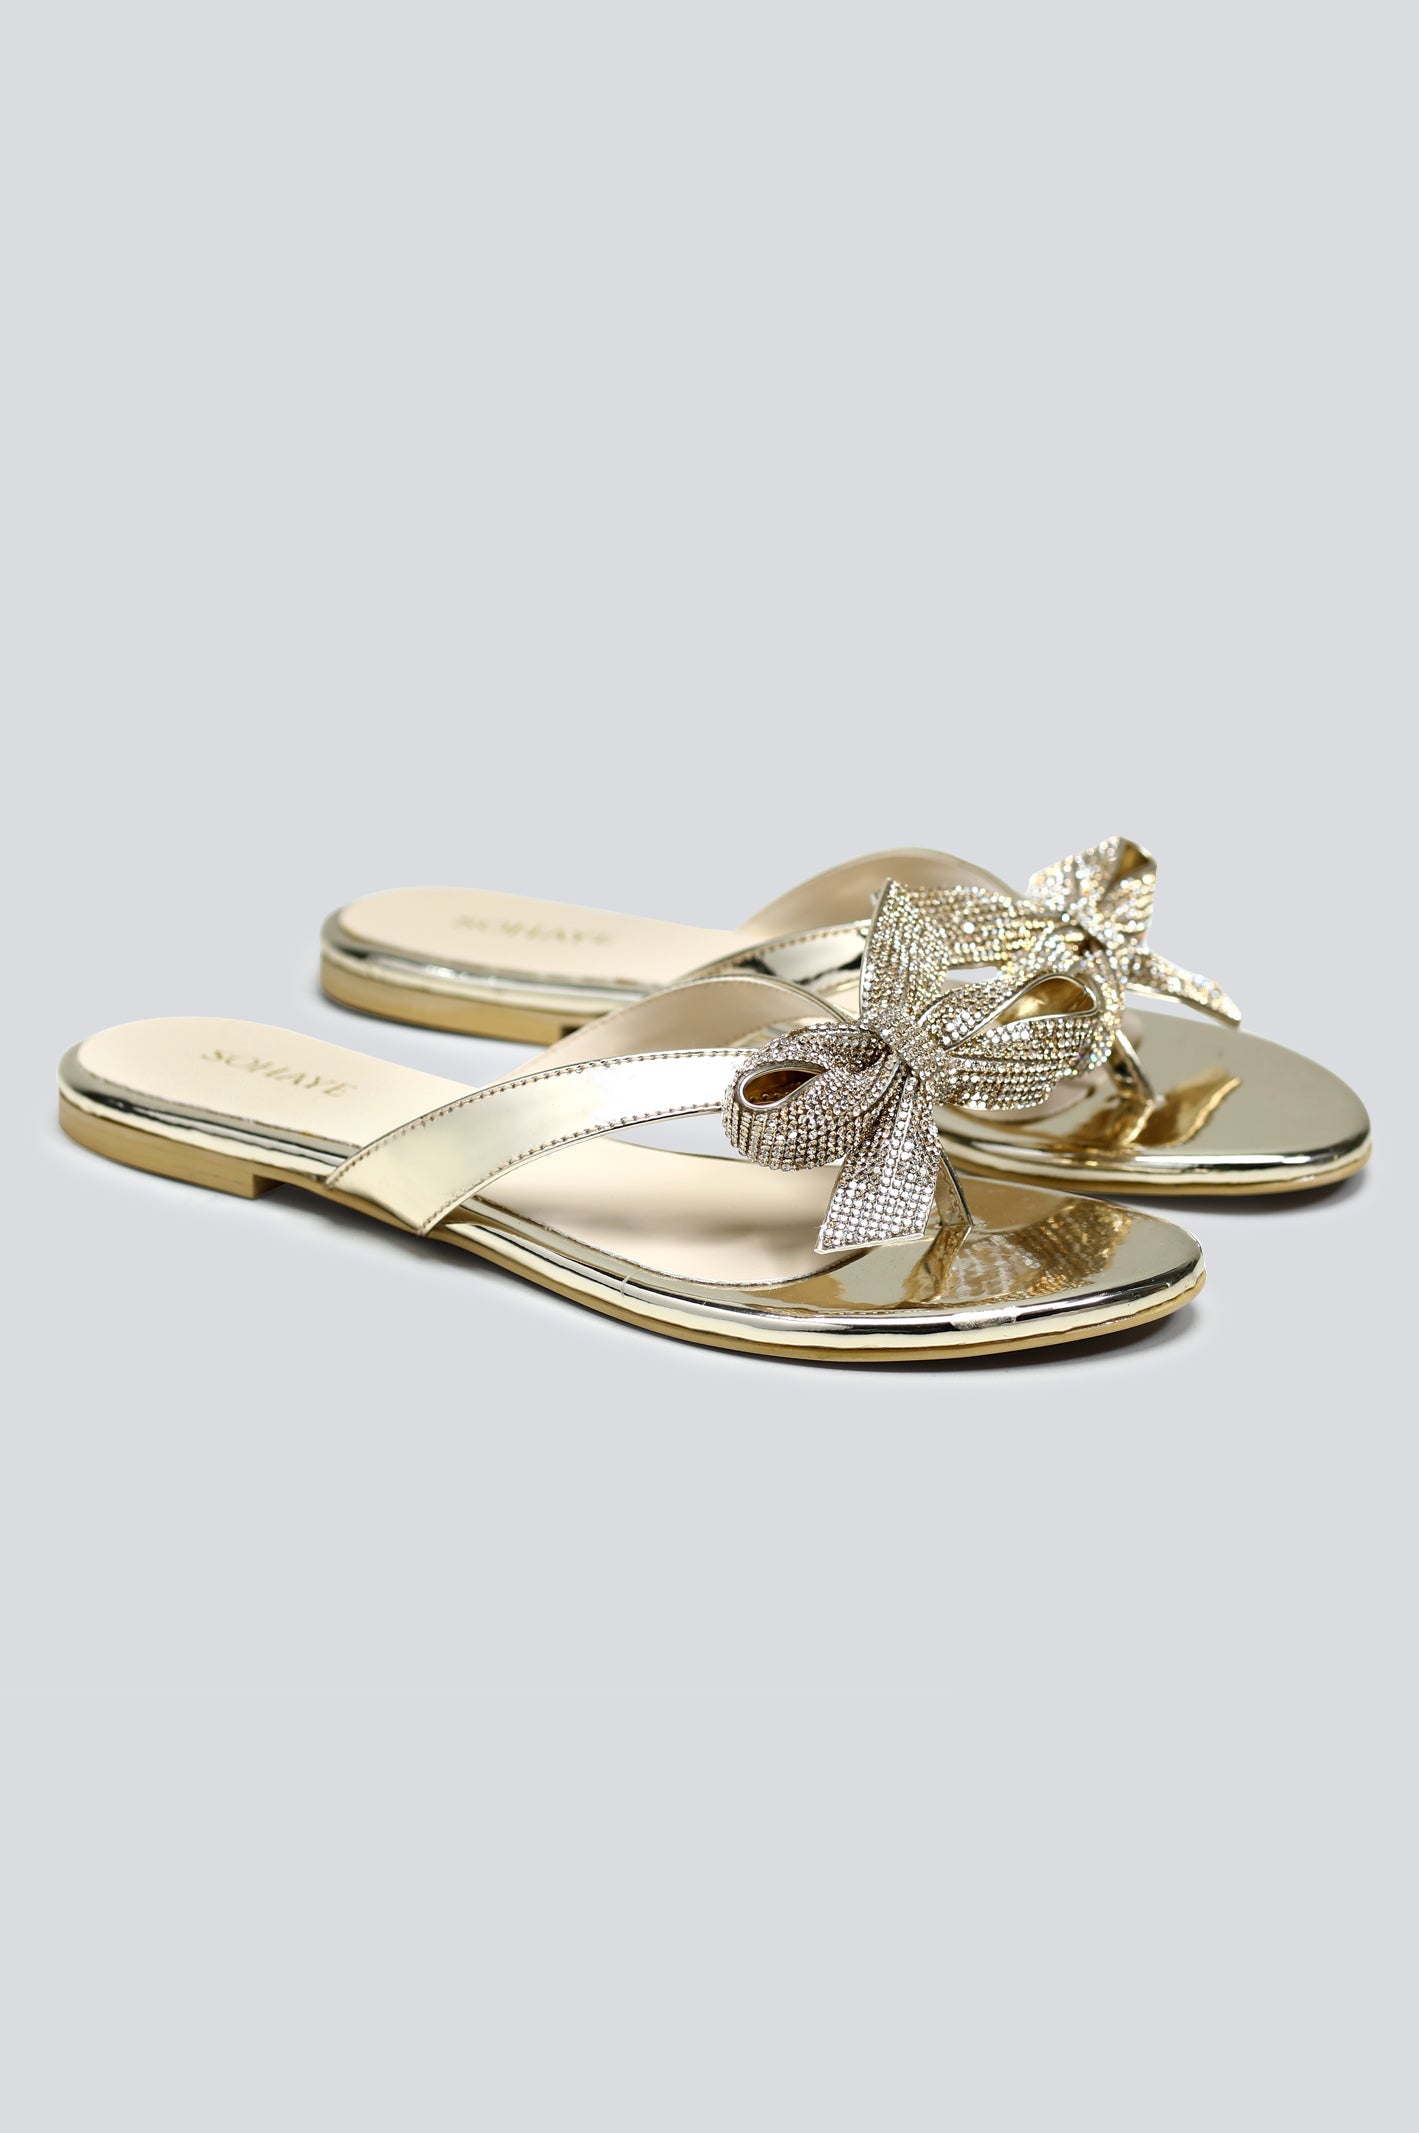 Golden Sohaye Slippers for Women's - Diners